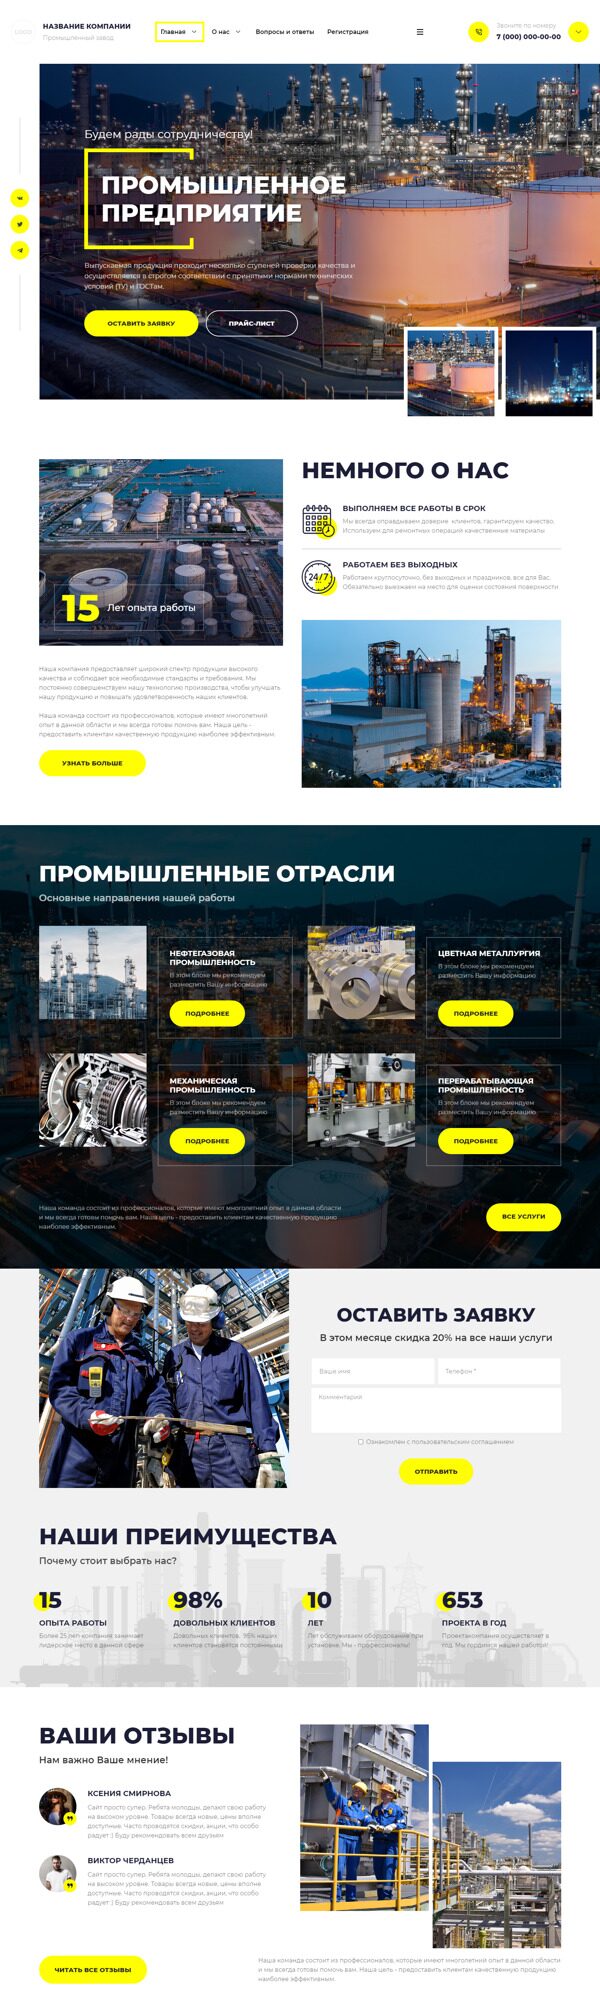 Готовый Сайт-Бизнес № 5551840 - Промышленный завод (Десктопная версия)